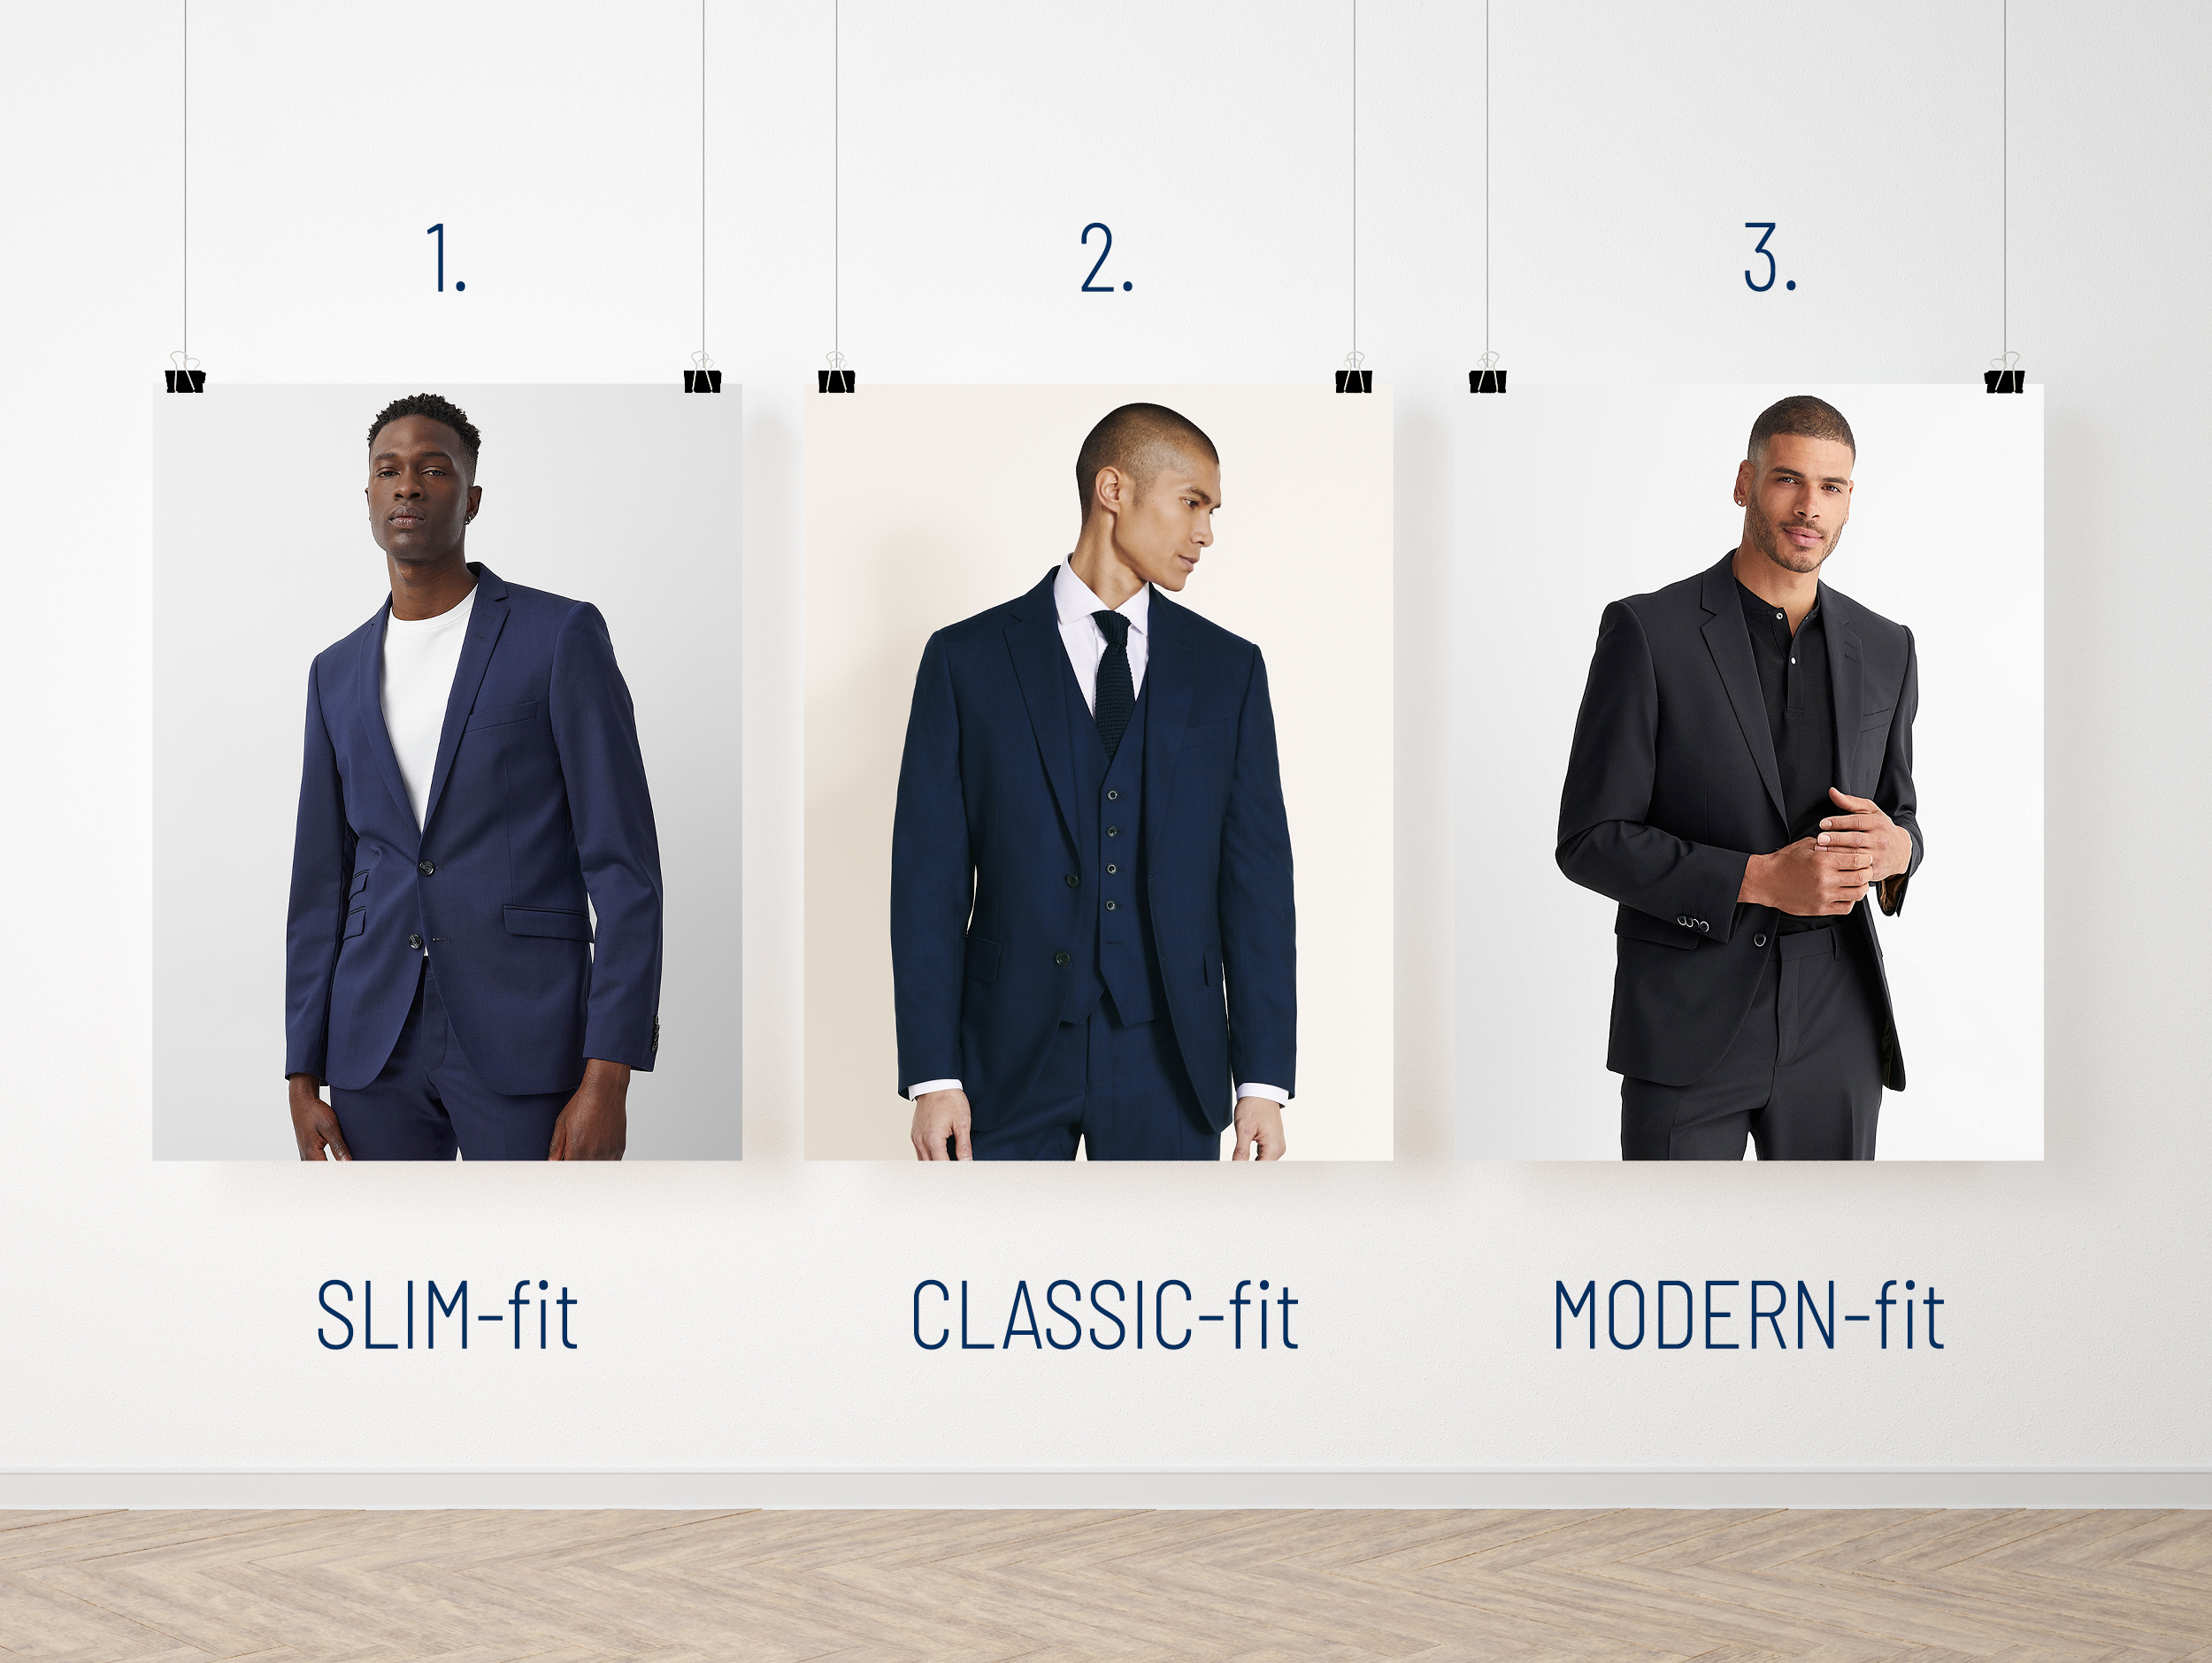 Slim-fit vs. classic-fit vs. modern-fit suit jacket